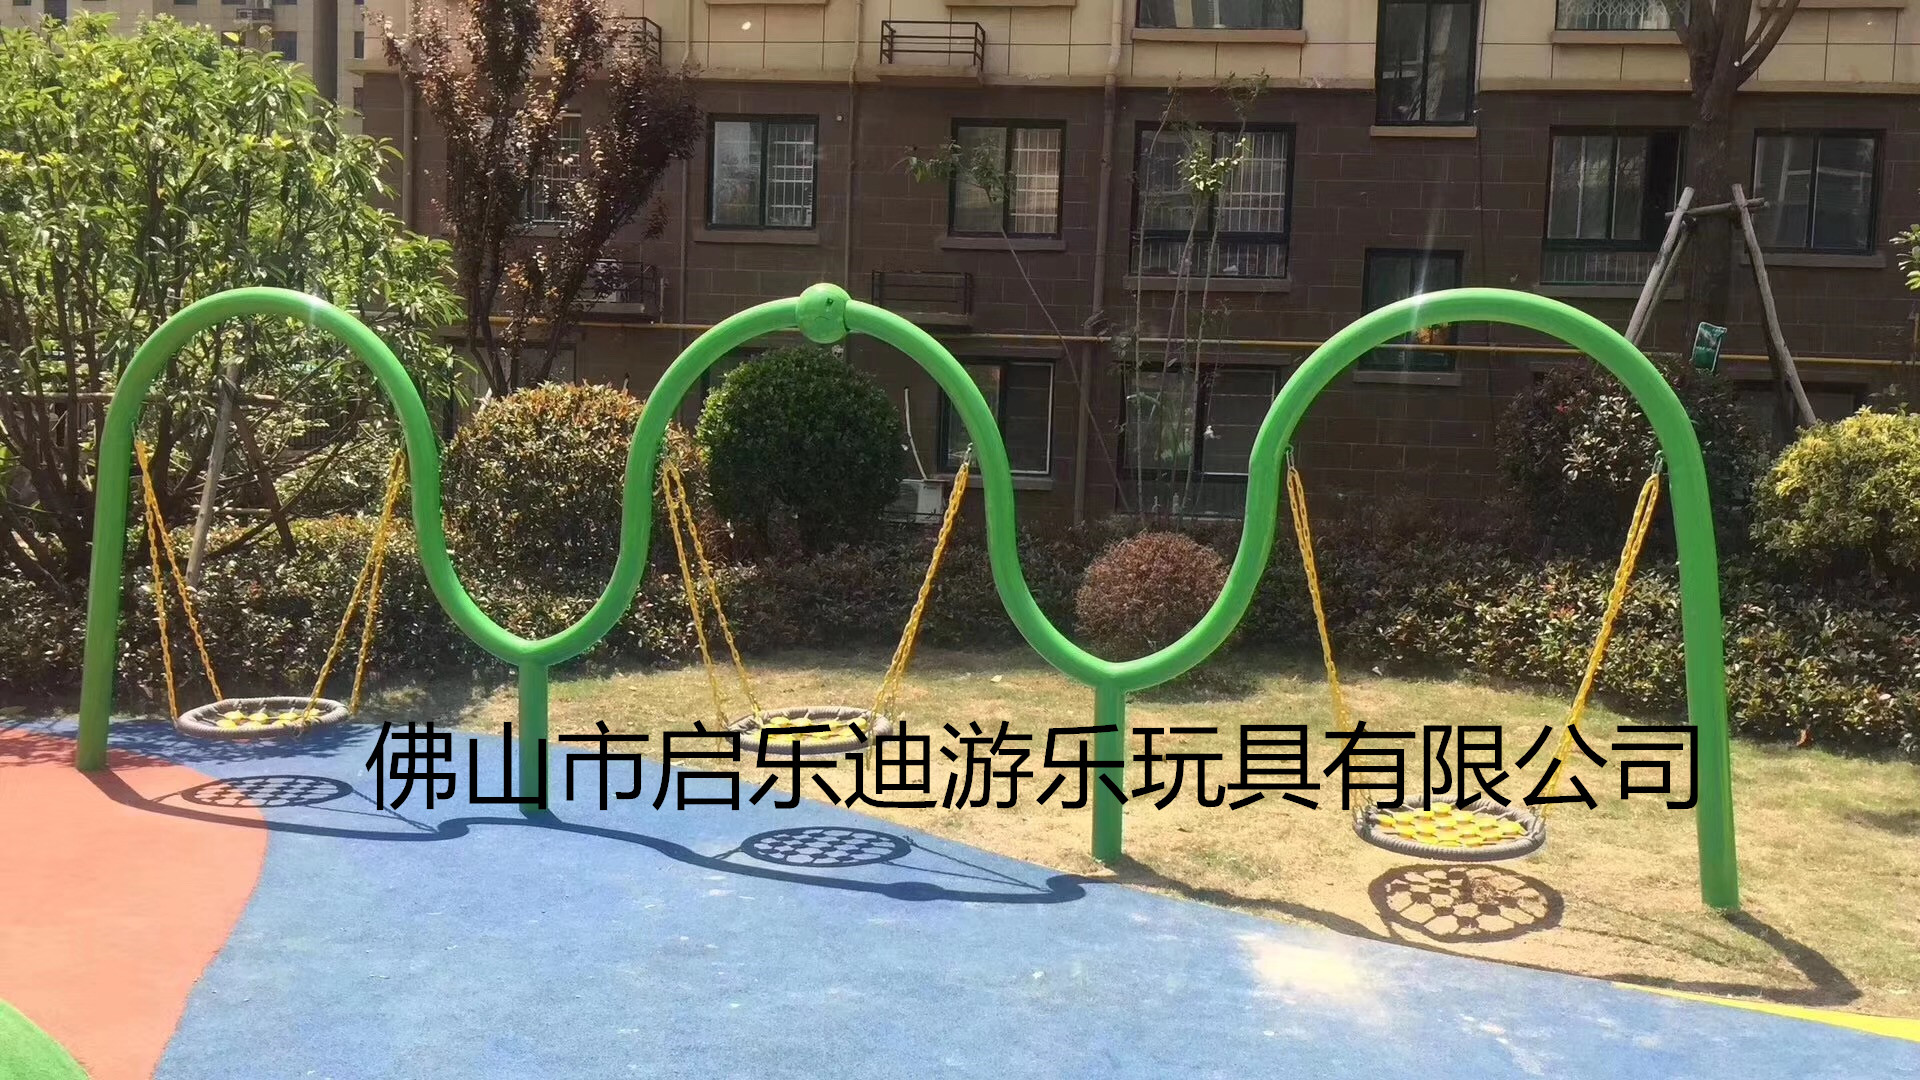 广州儿童 户外荡秋千大型玩具游玩场所公园小区自然景区场所图片